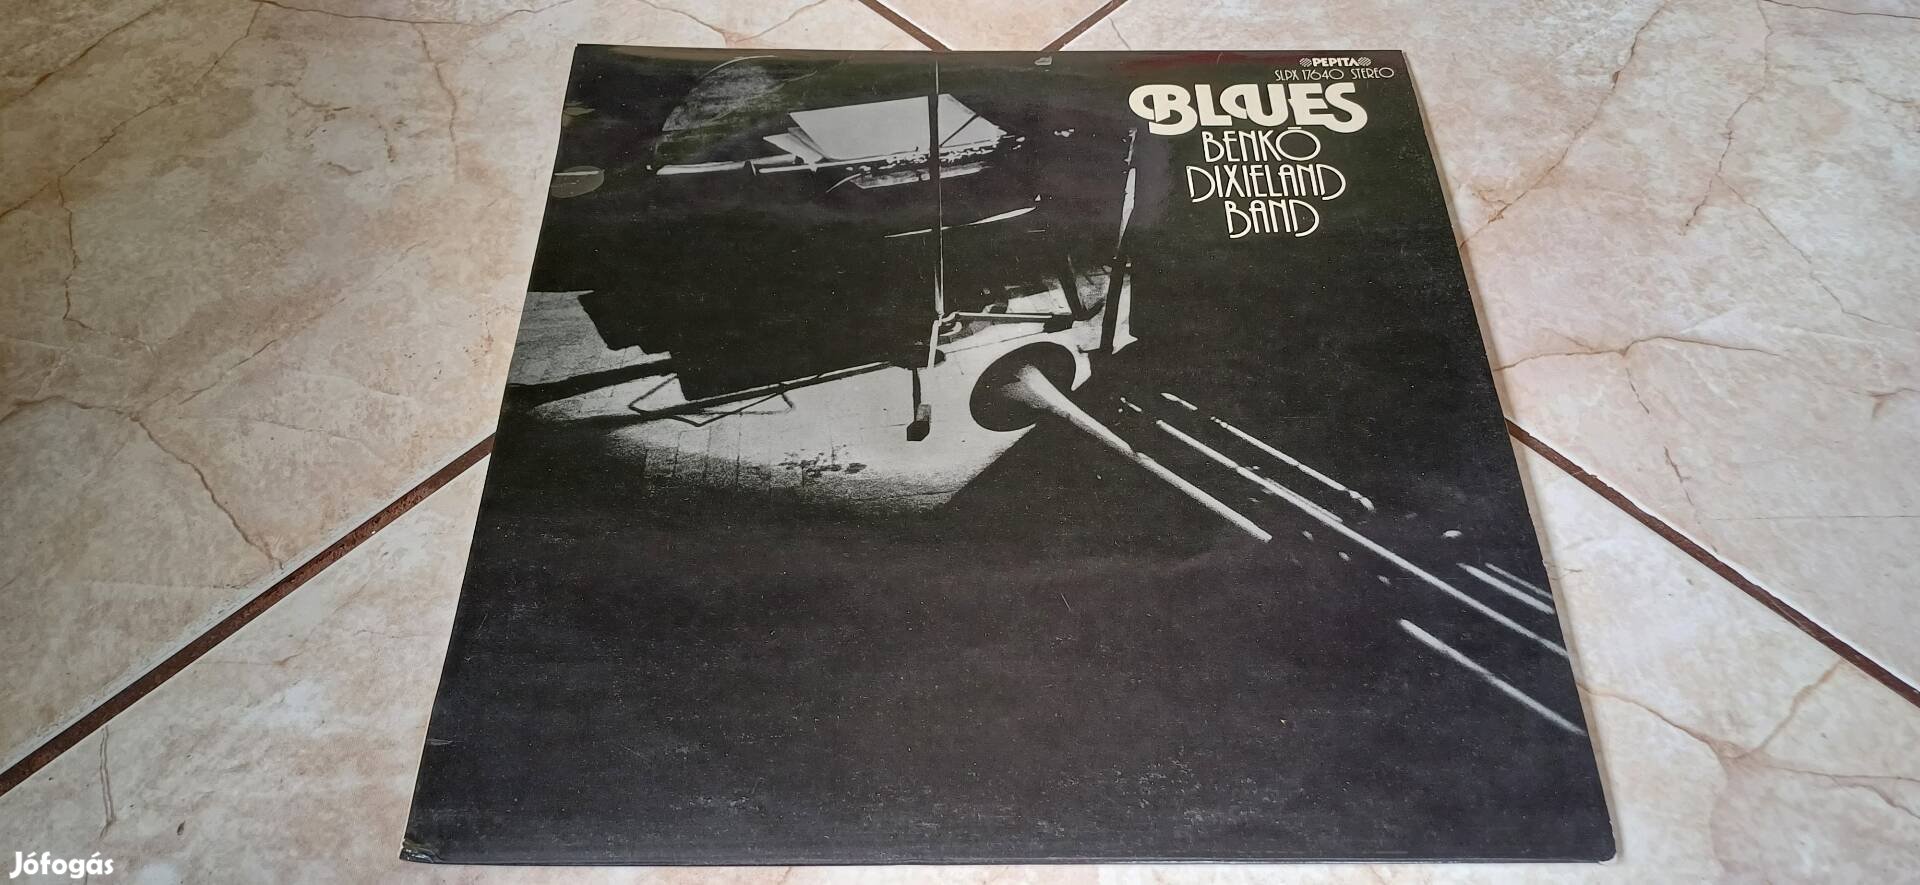 Benkó Dixieland Band Blues bakelit lemez